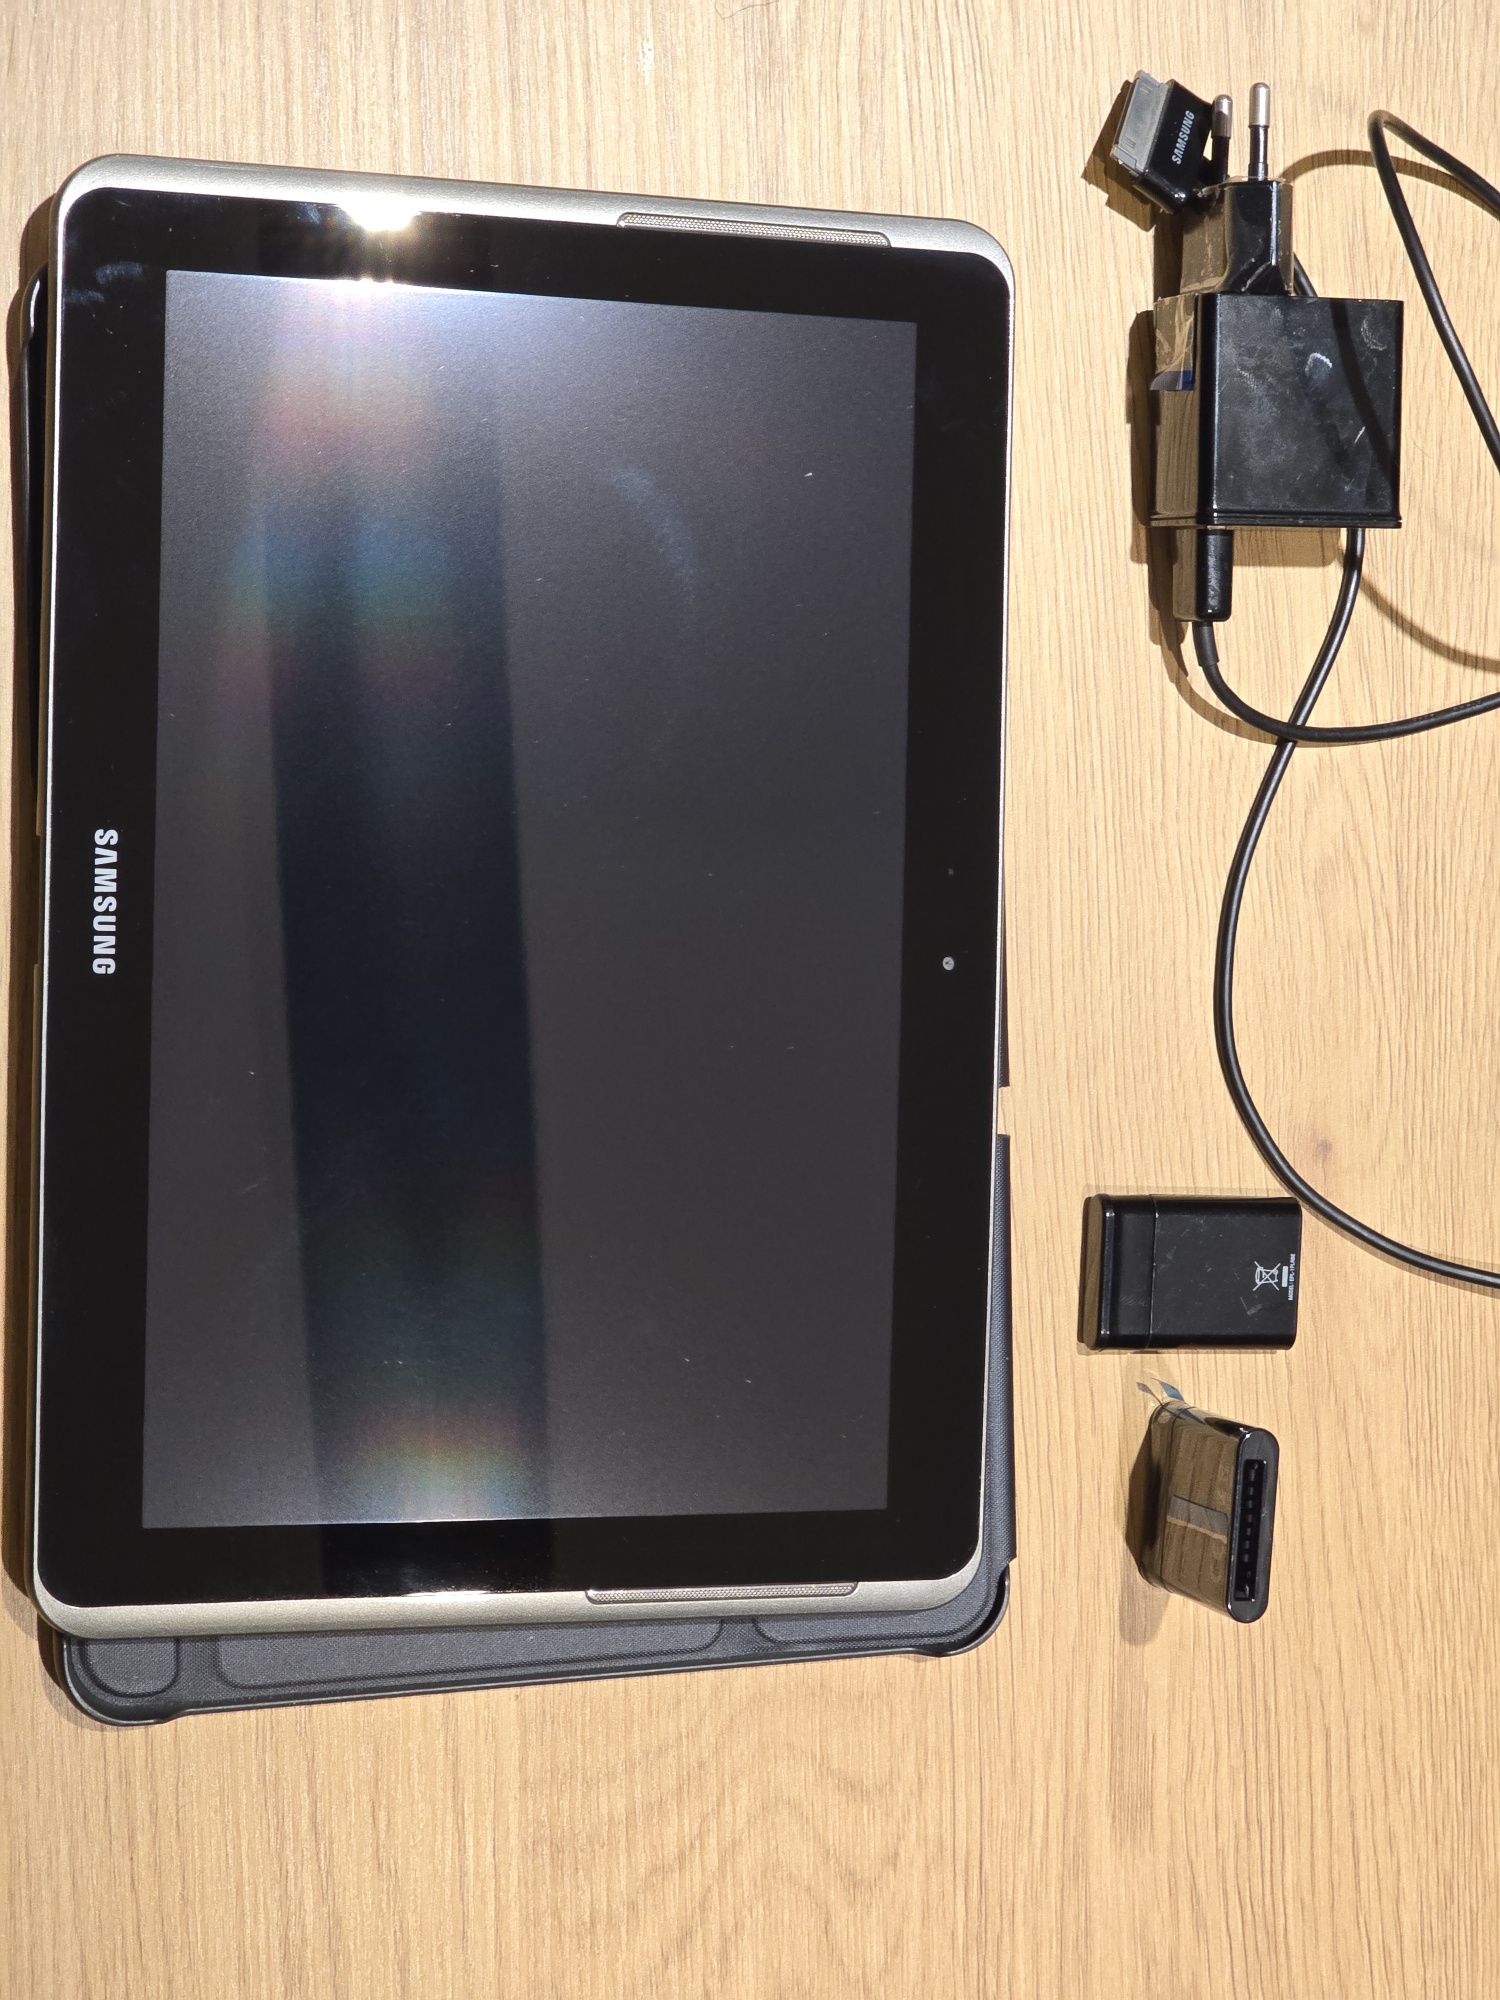 Samsung Galaxy Tab 2 10.1 3g SIM + etui - STAN IDEALNY,